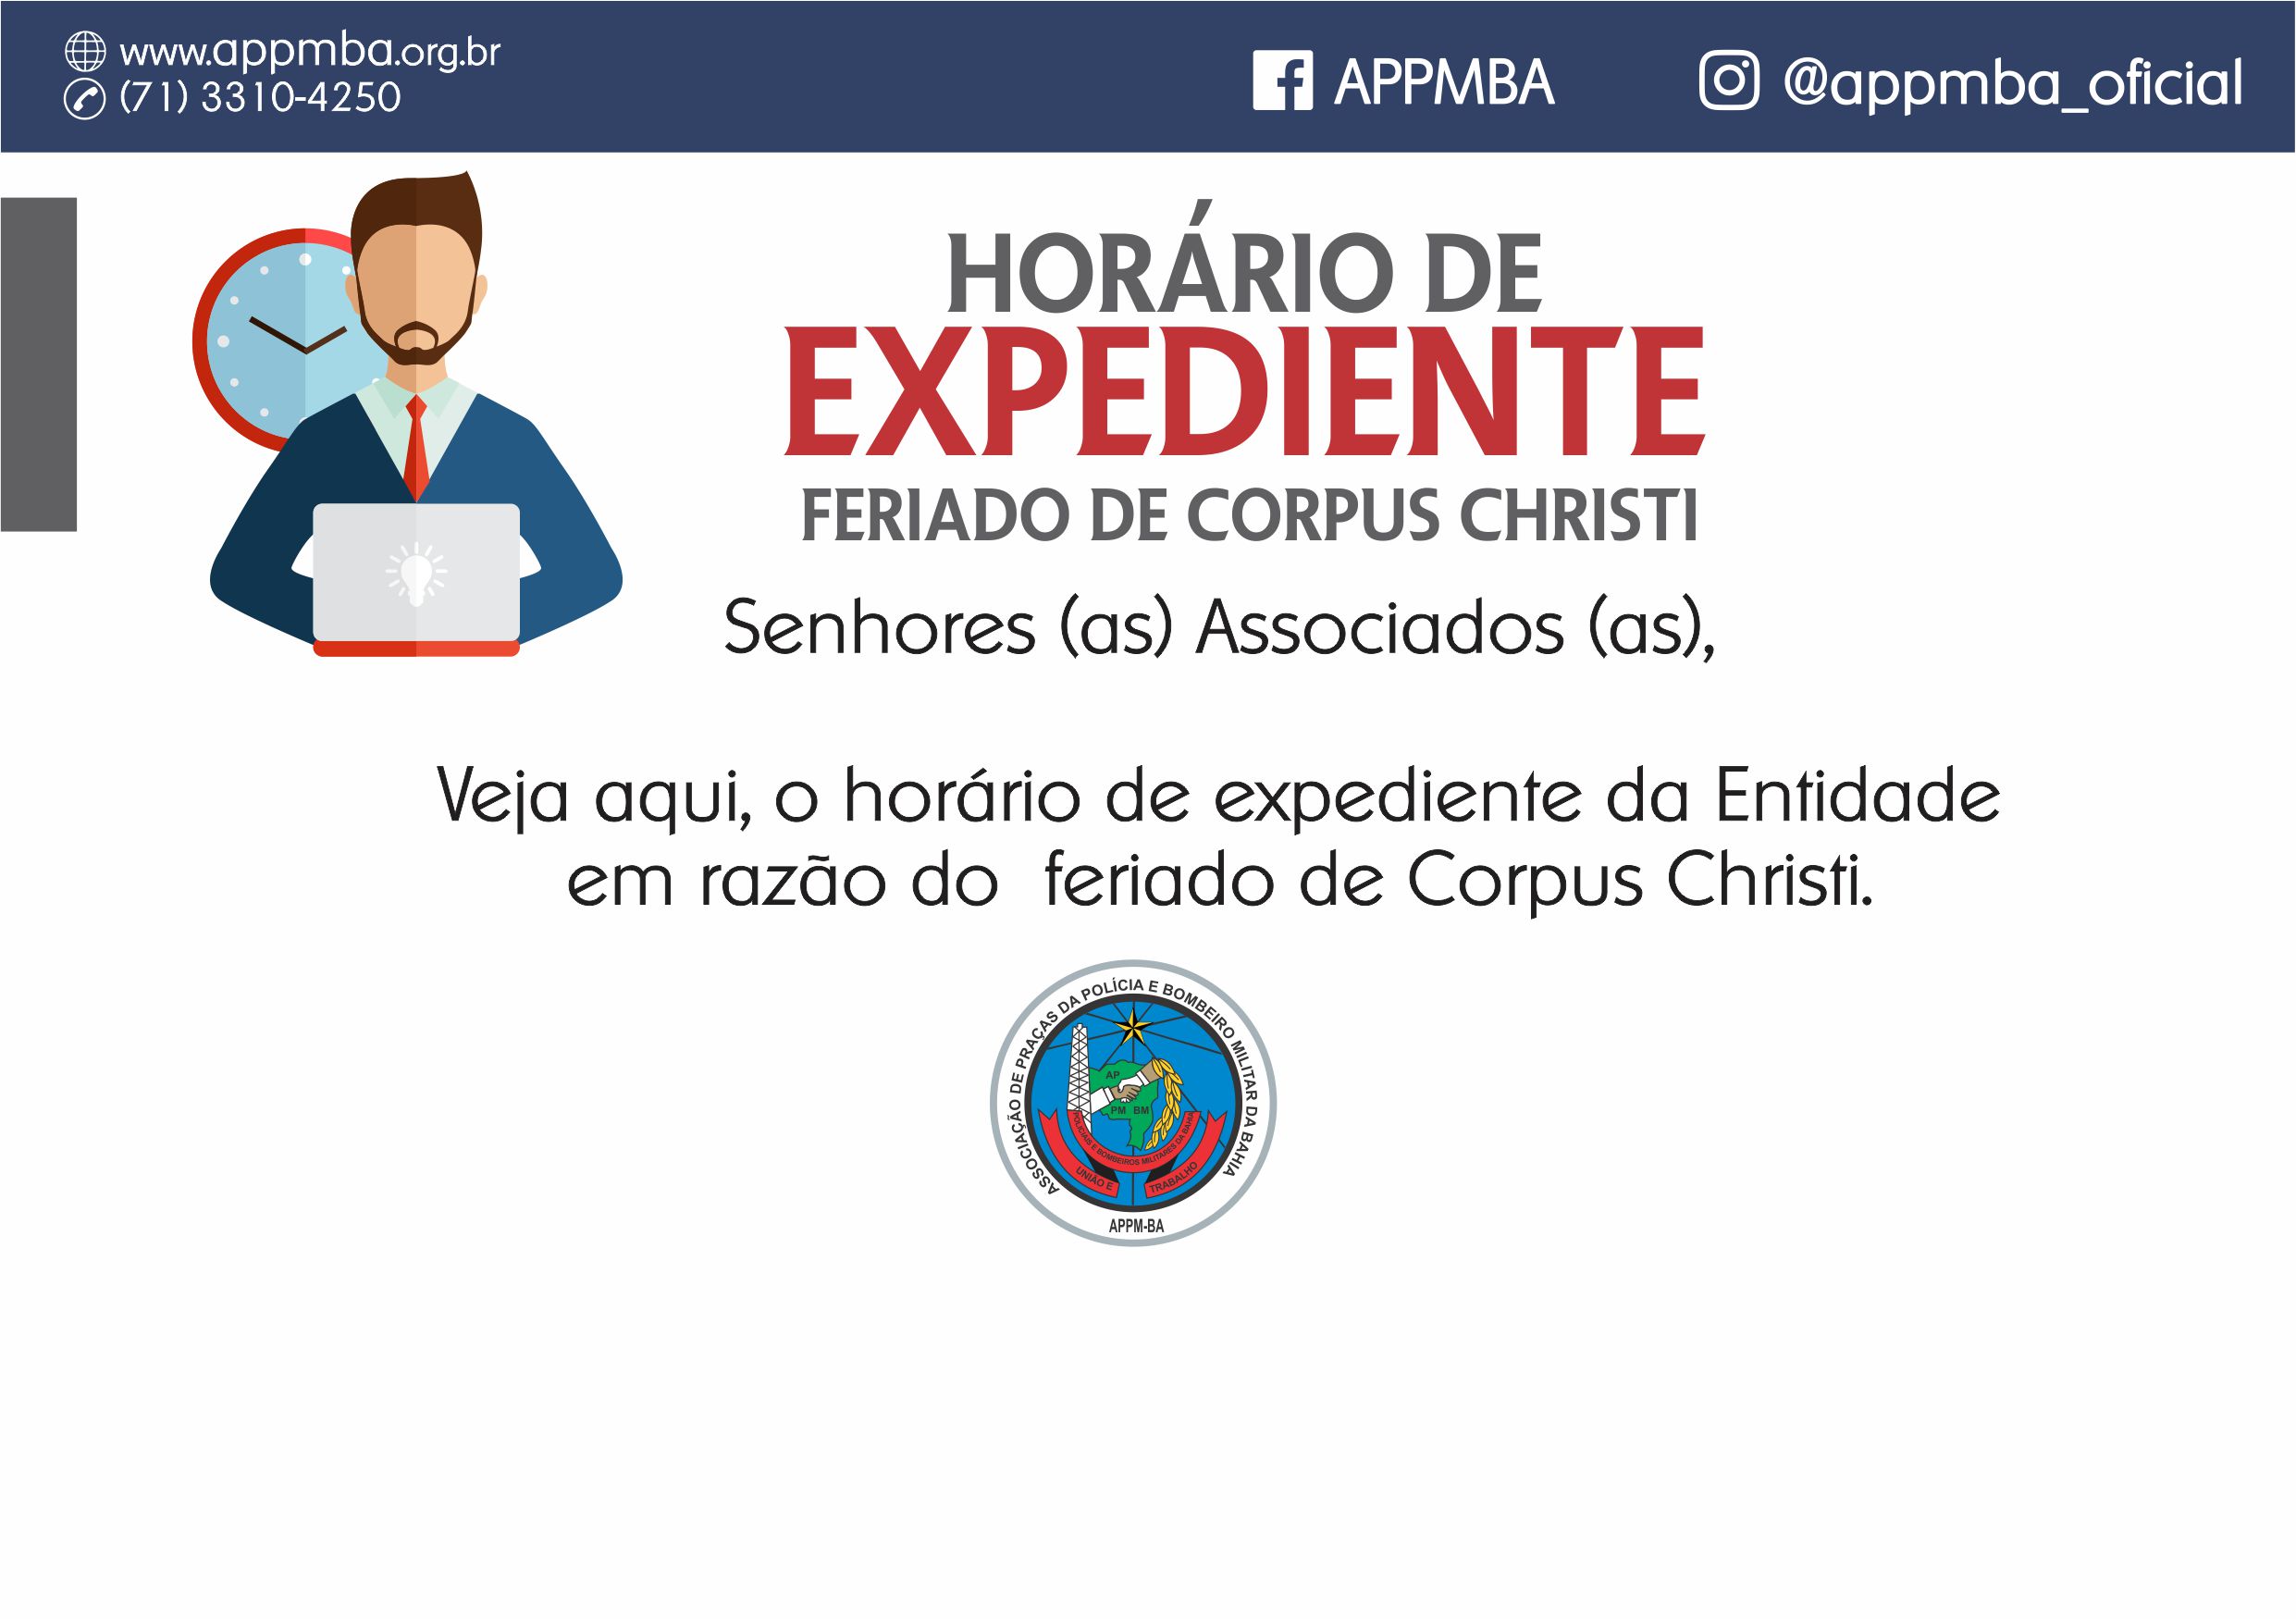 Horário de expediente - Corpus Christi 2018